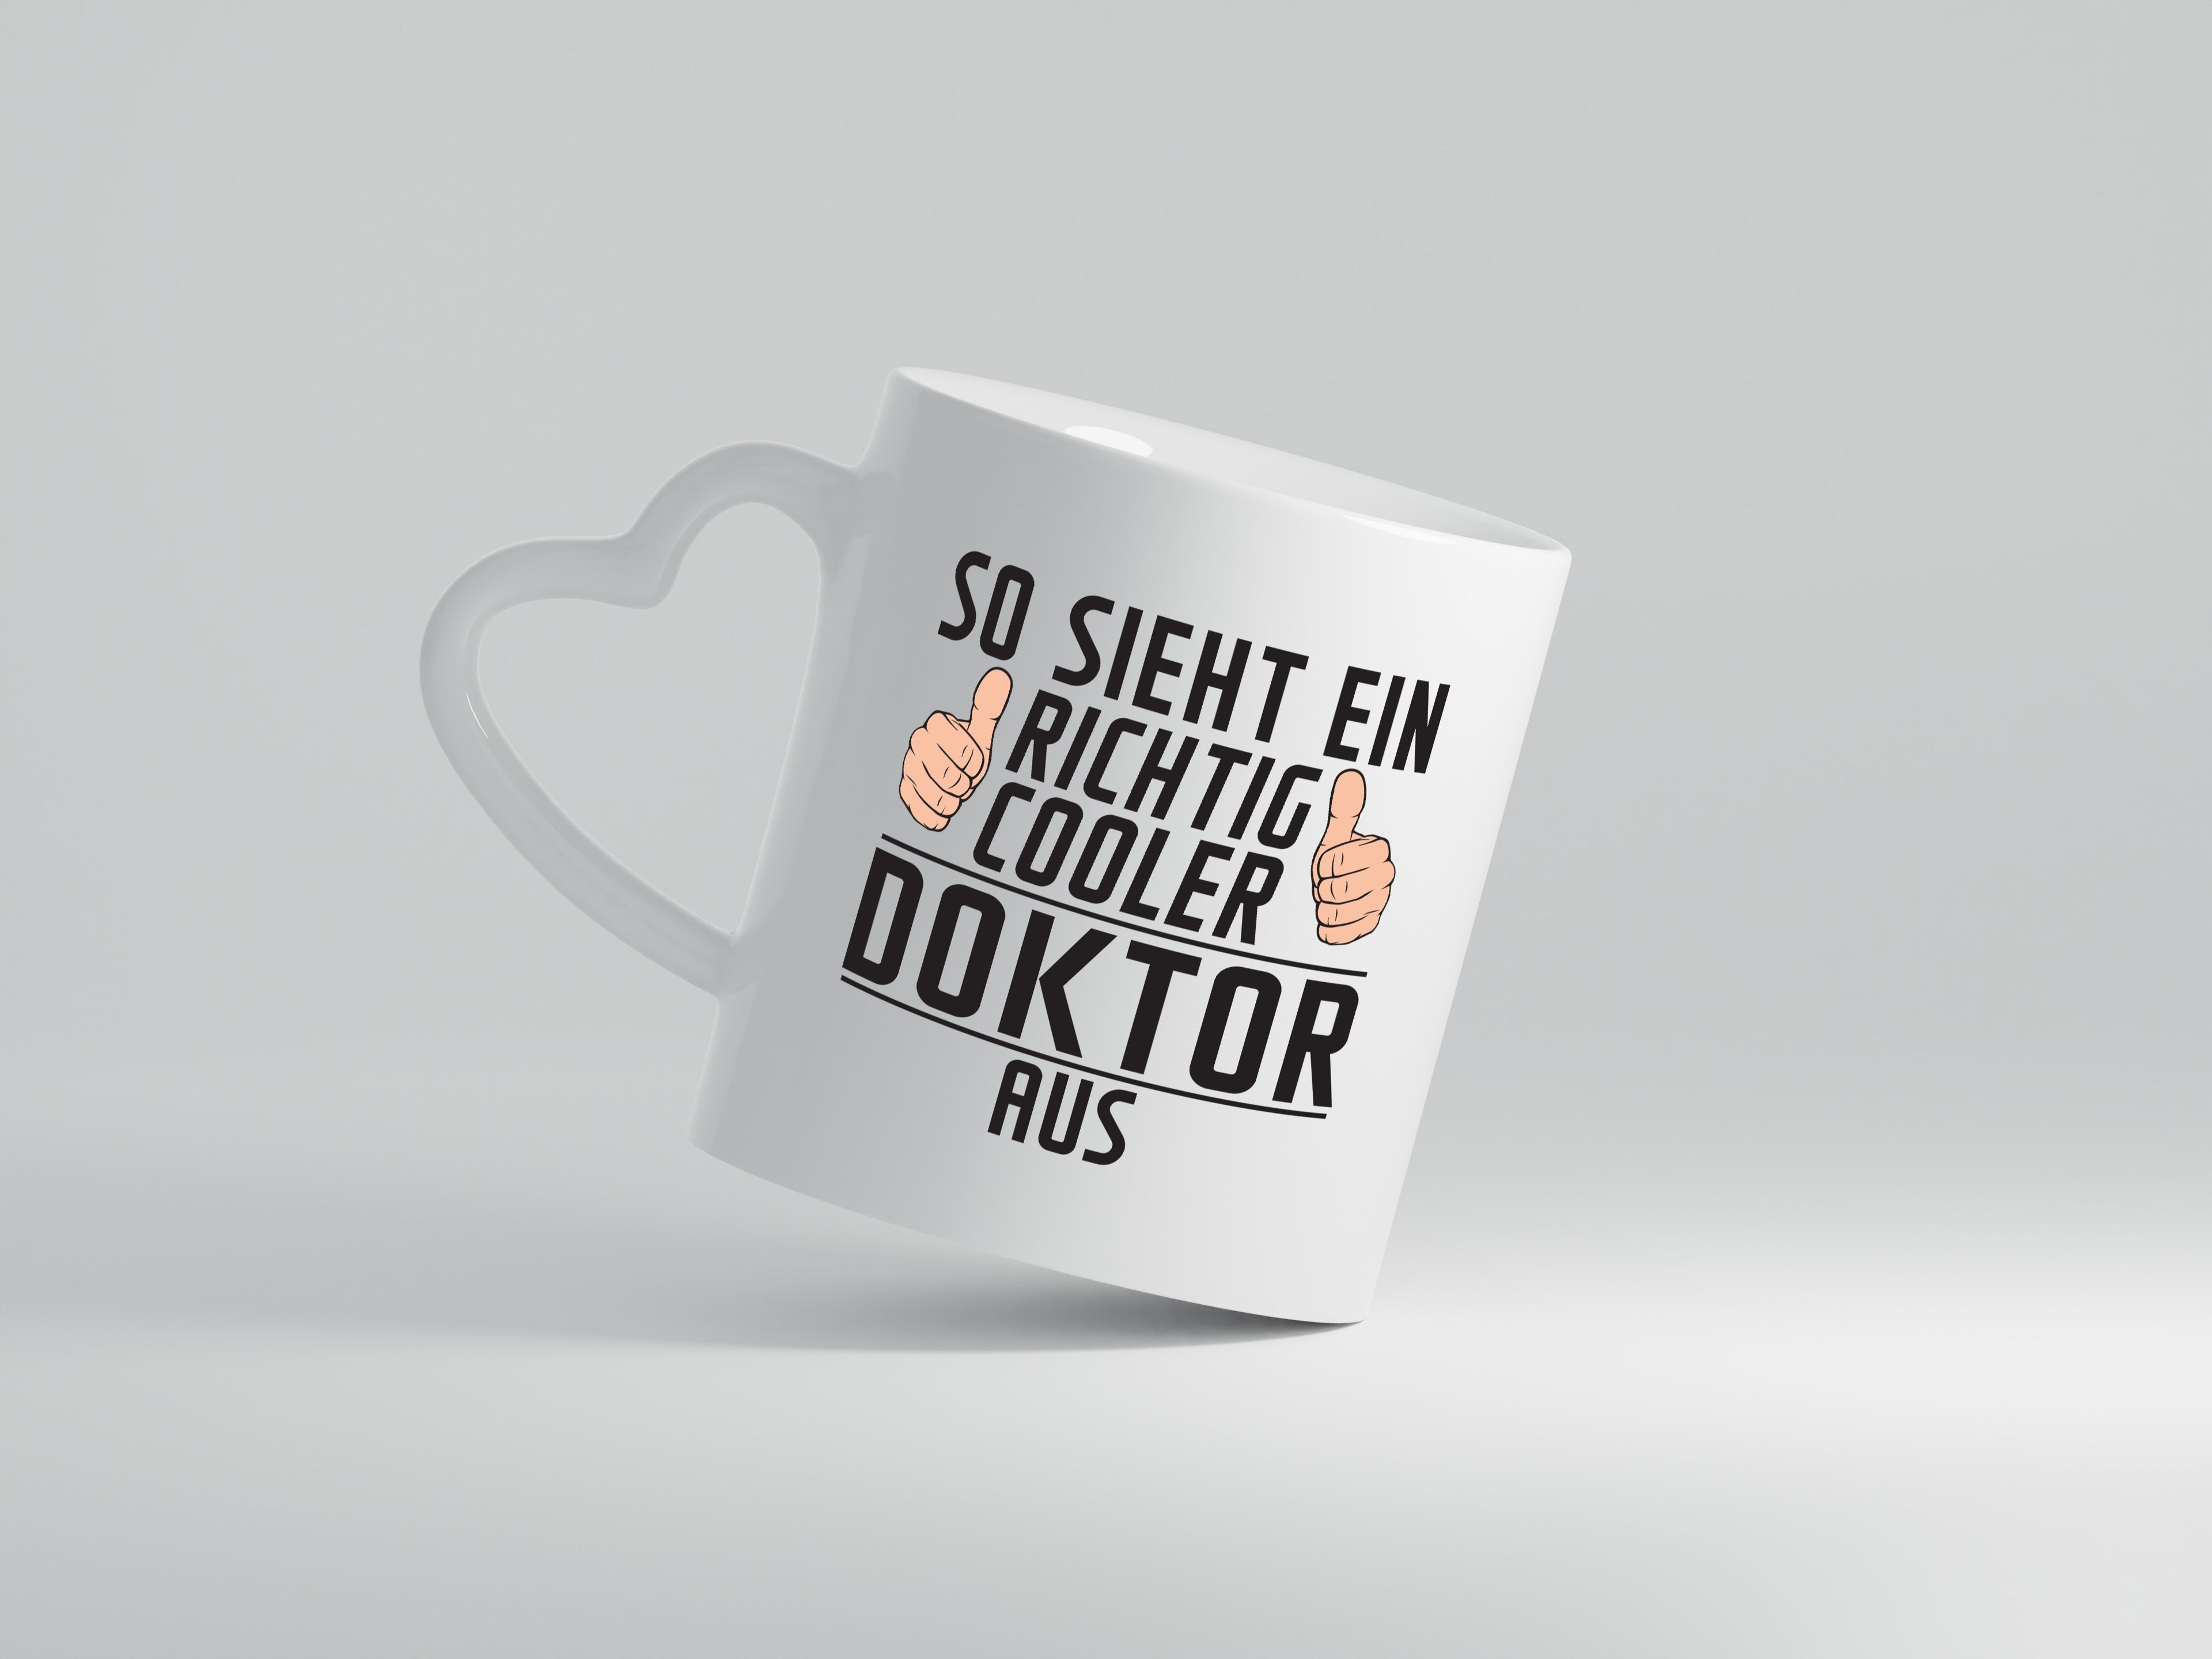 Richtig Cooler Doktor| Doktorand | Doktortitel - Herzhenkel Tasse - Kaffeetasse / Geschenk / Familie